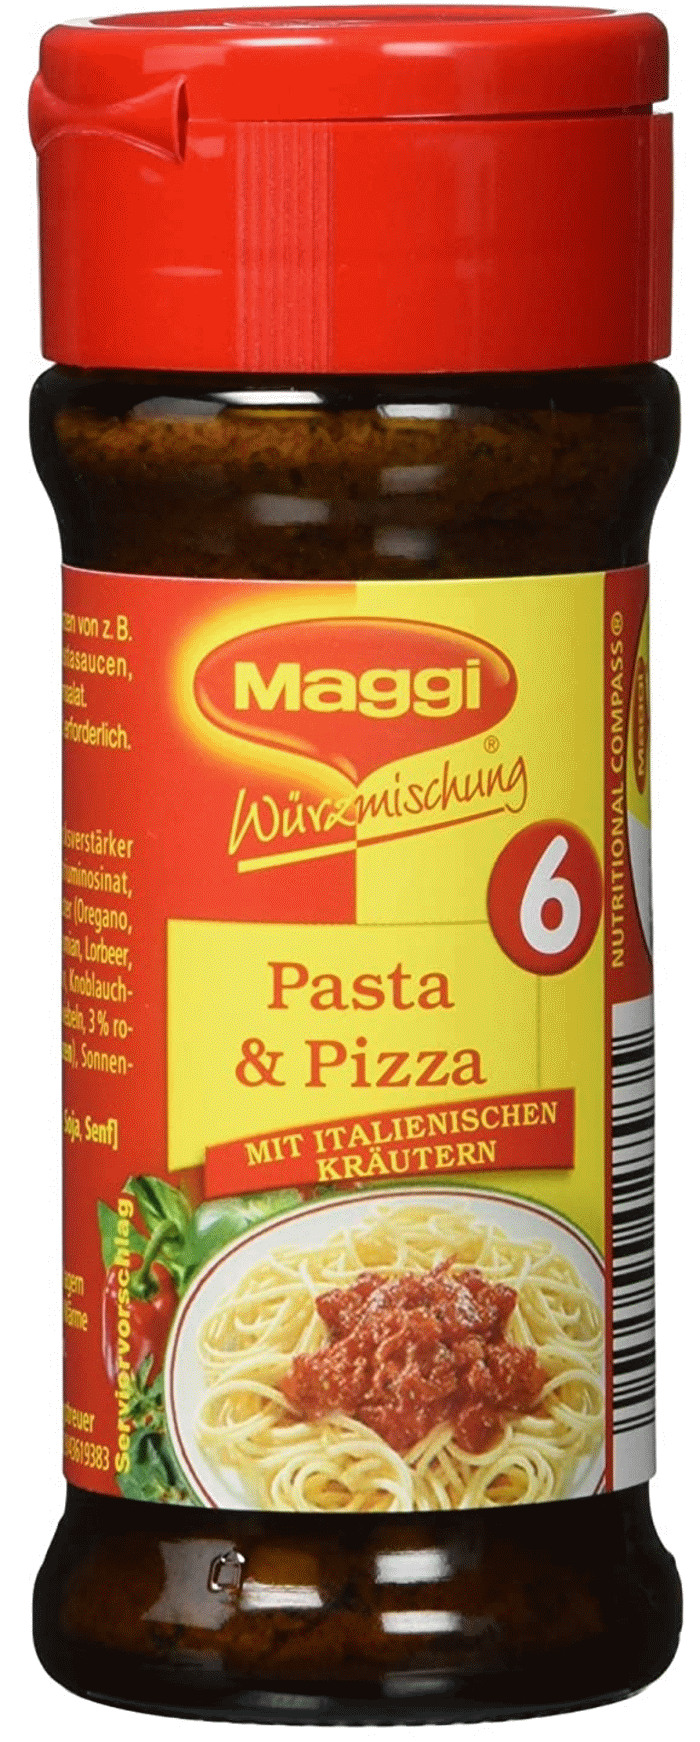 Maggi Würzmischung Nr.6 für Pizza & Pasta 60g